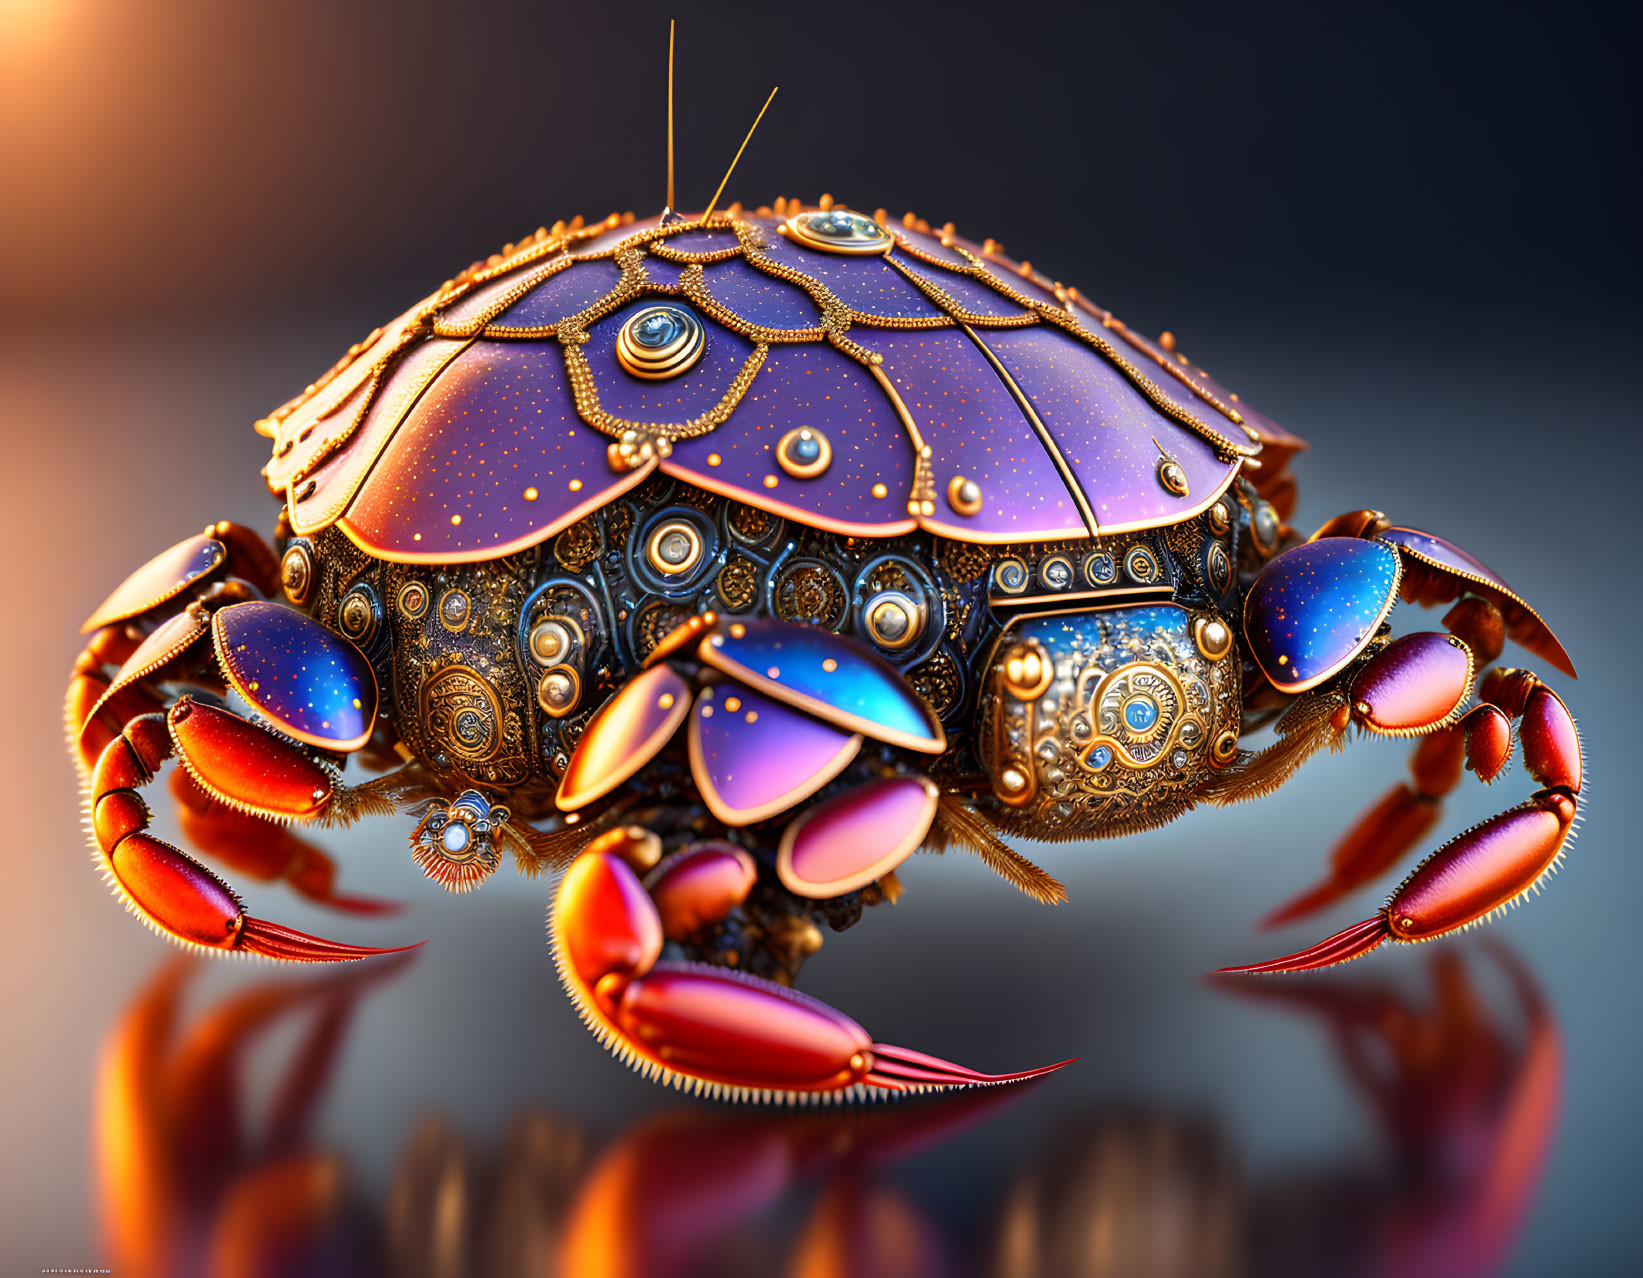 Robot crab